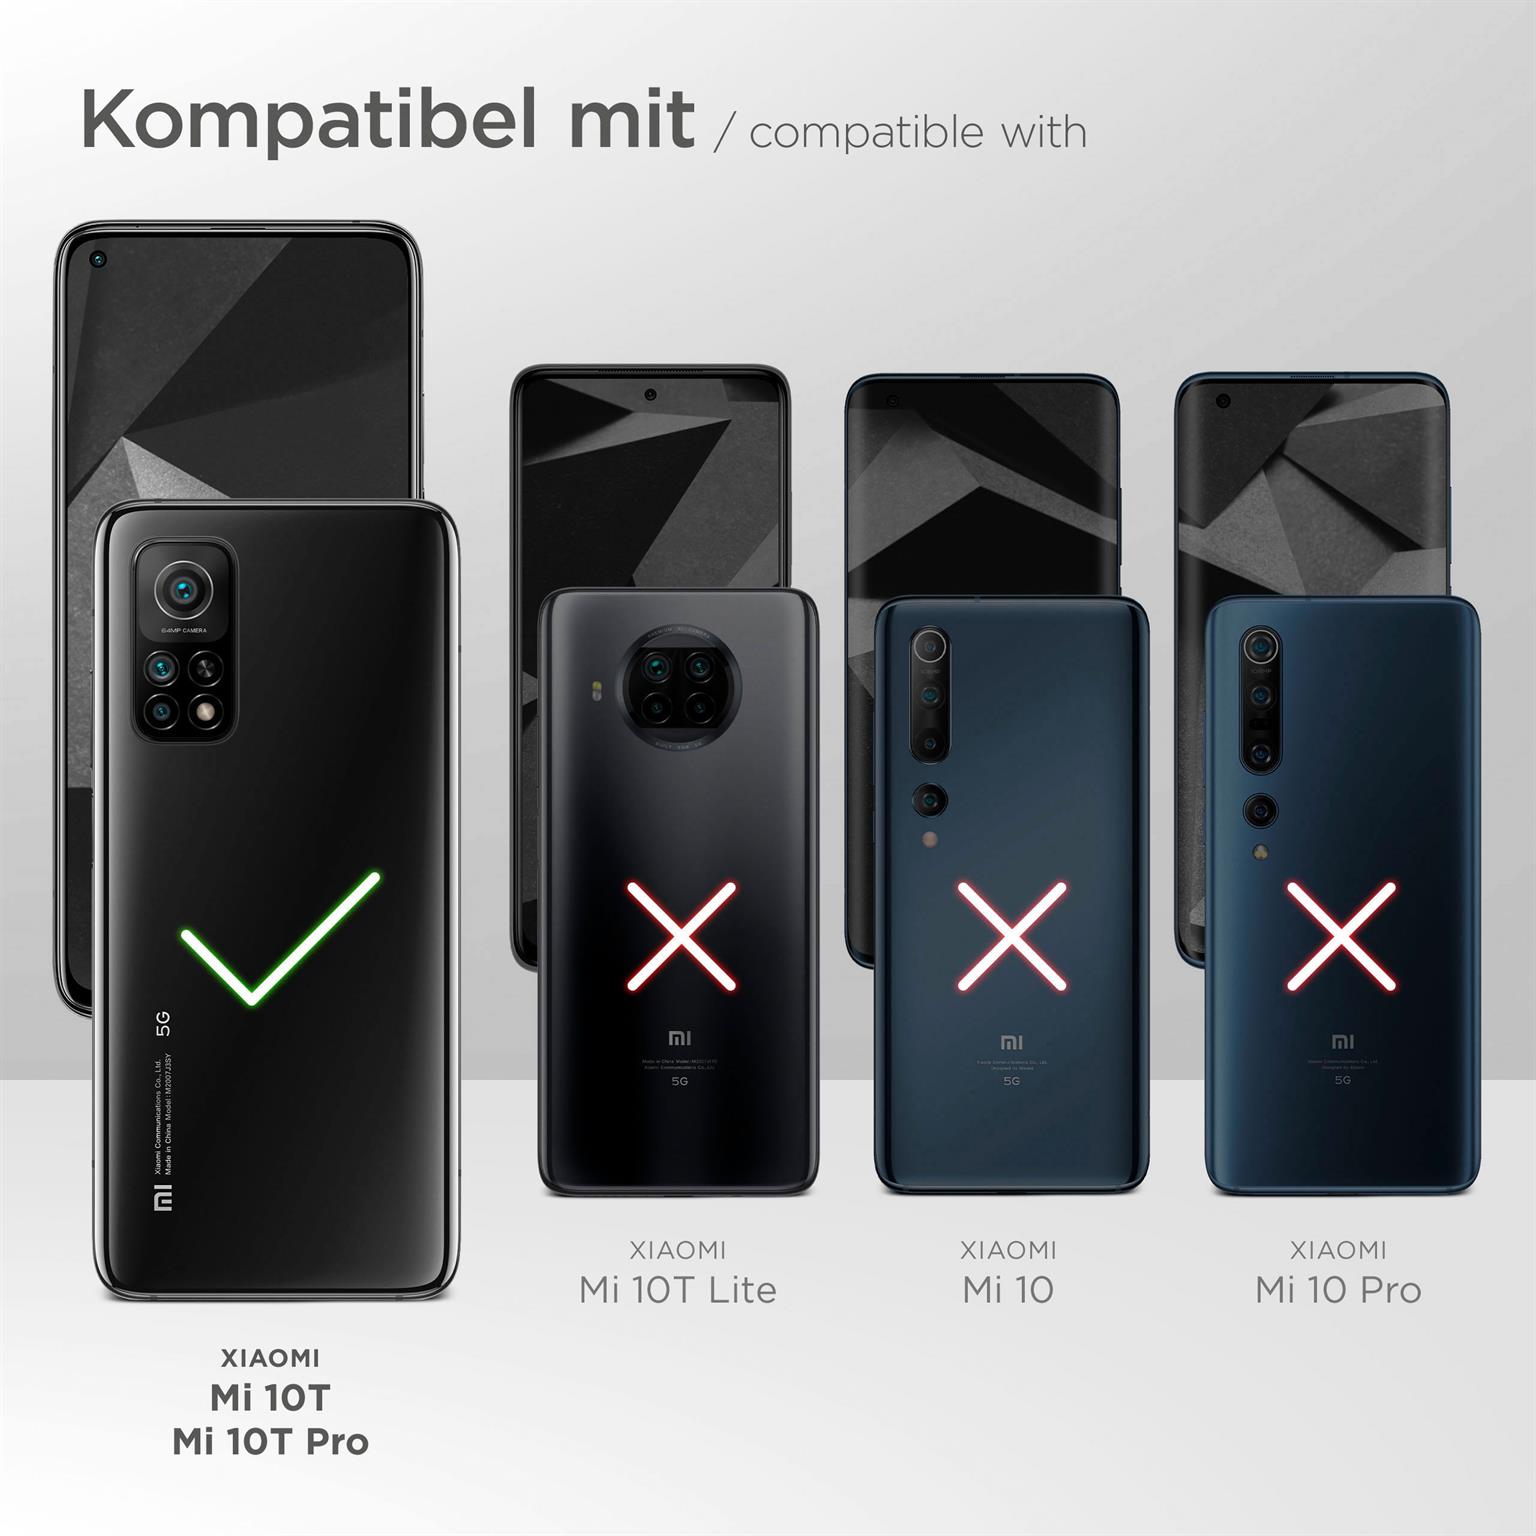 moex Alpha Case für Xiaomi Mi 10T – Extrem dünne, minimalistische Hülle in seidenmatt